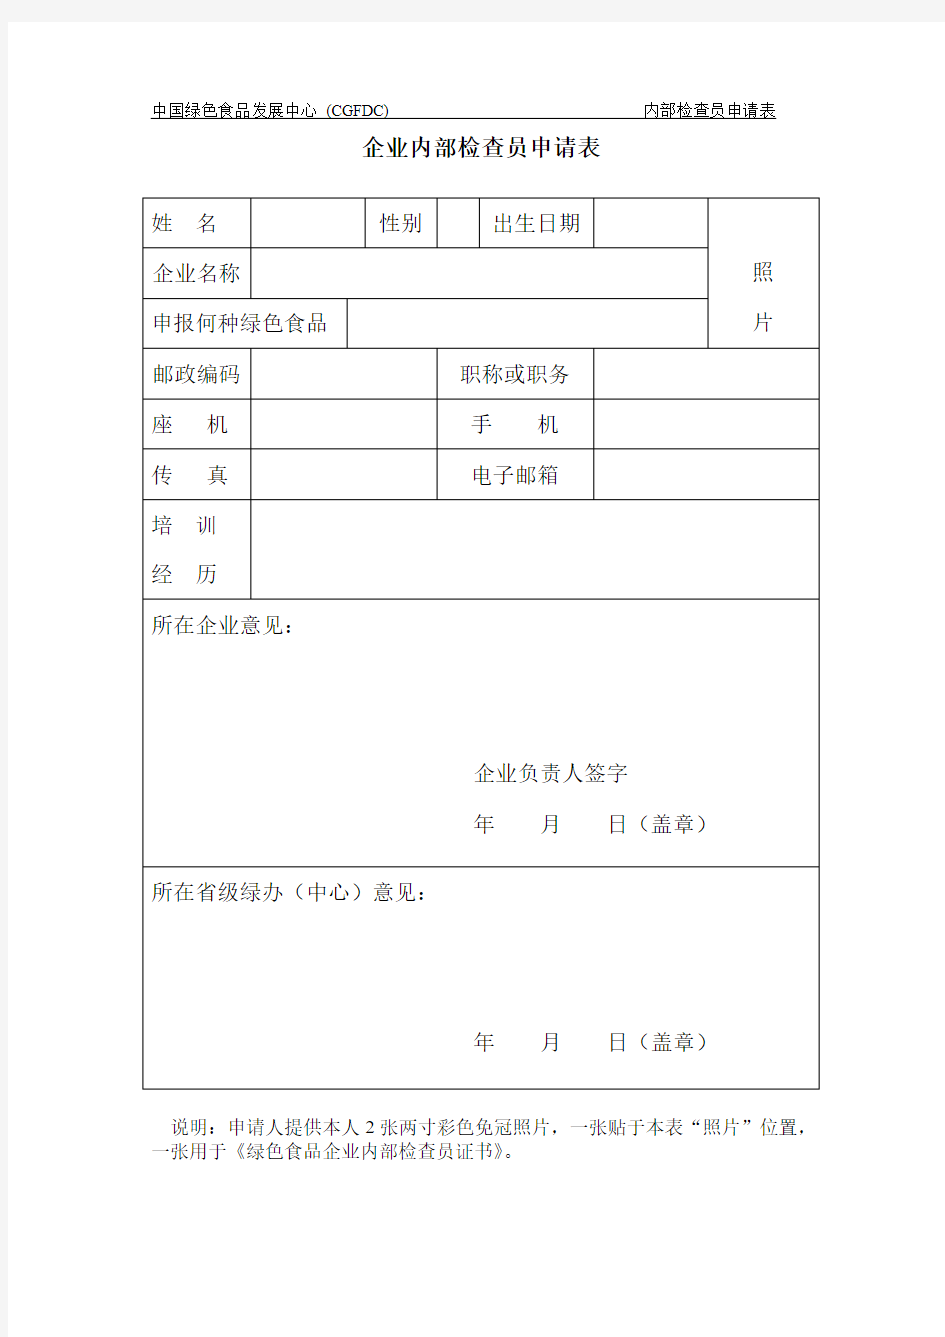 中国绿色食品发展中心(CGFDC)内部检查员申请表